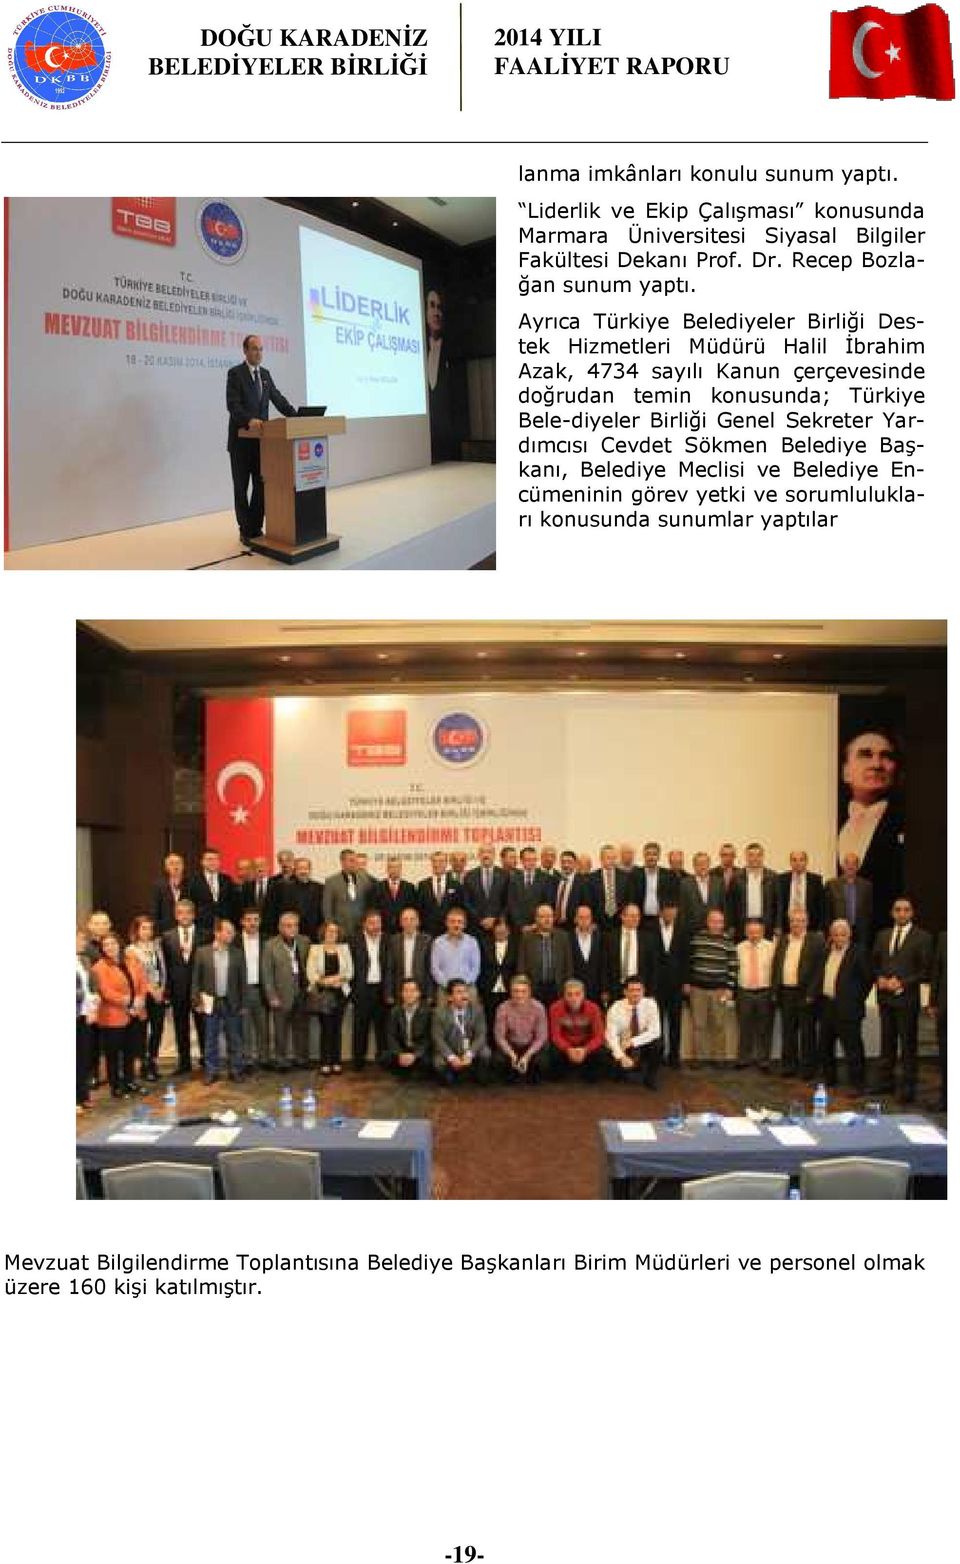 Ayrıca Türkiye Belediyeler Birliği Destek Hizmetleri Müdürü Halil İbrahim Azak, 4734 sayılı Kanun çerçevesinde doğrudan temin konusunda; Türkiye